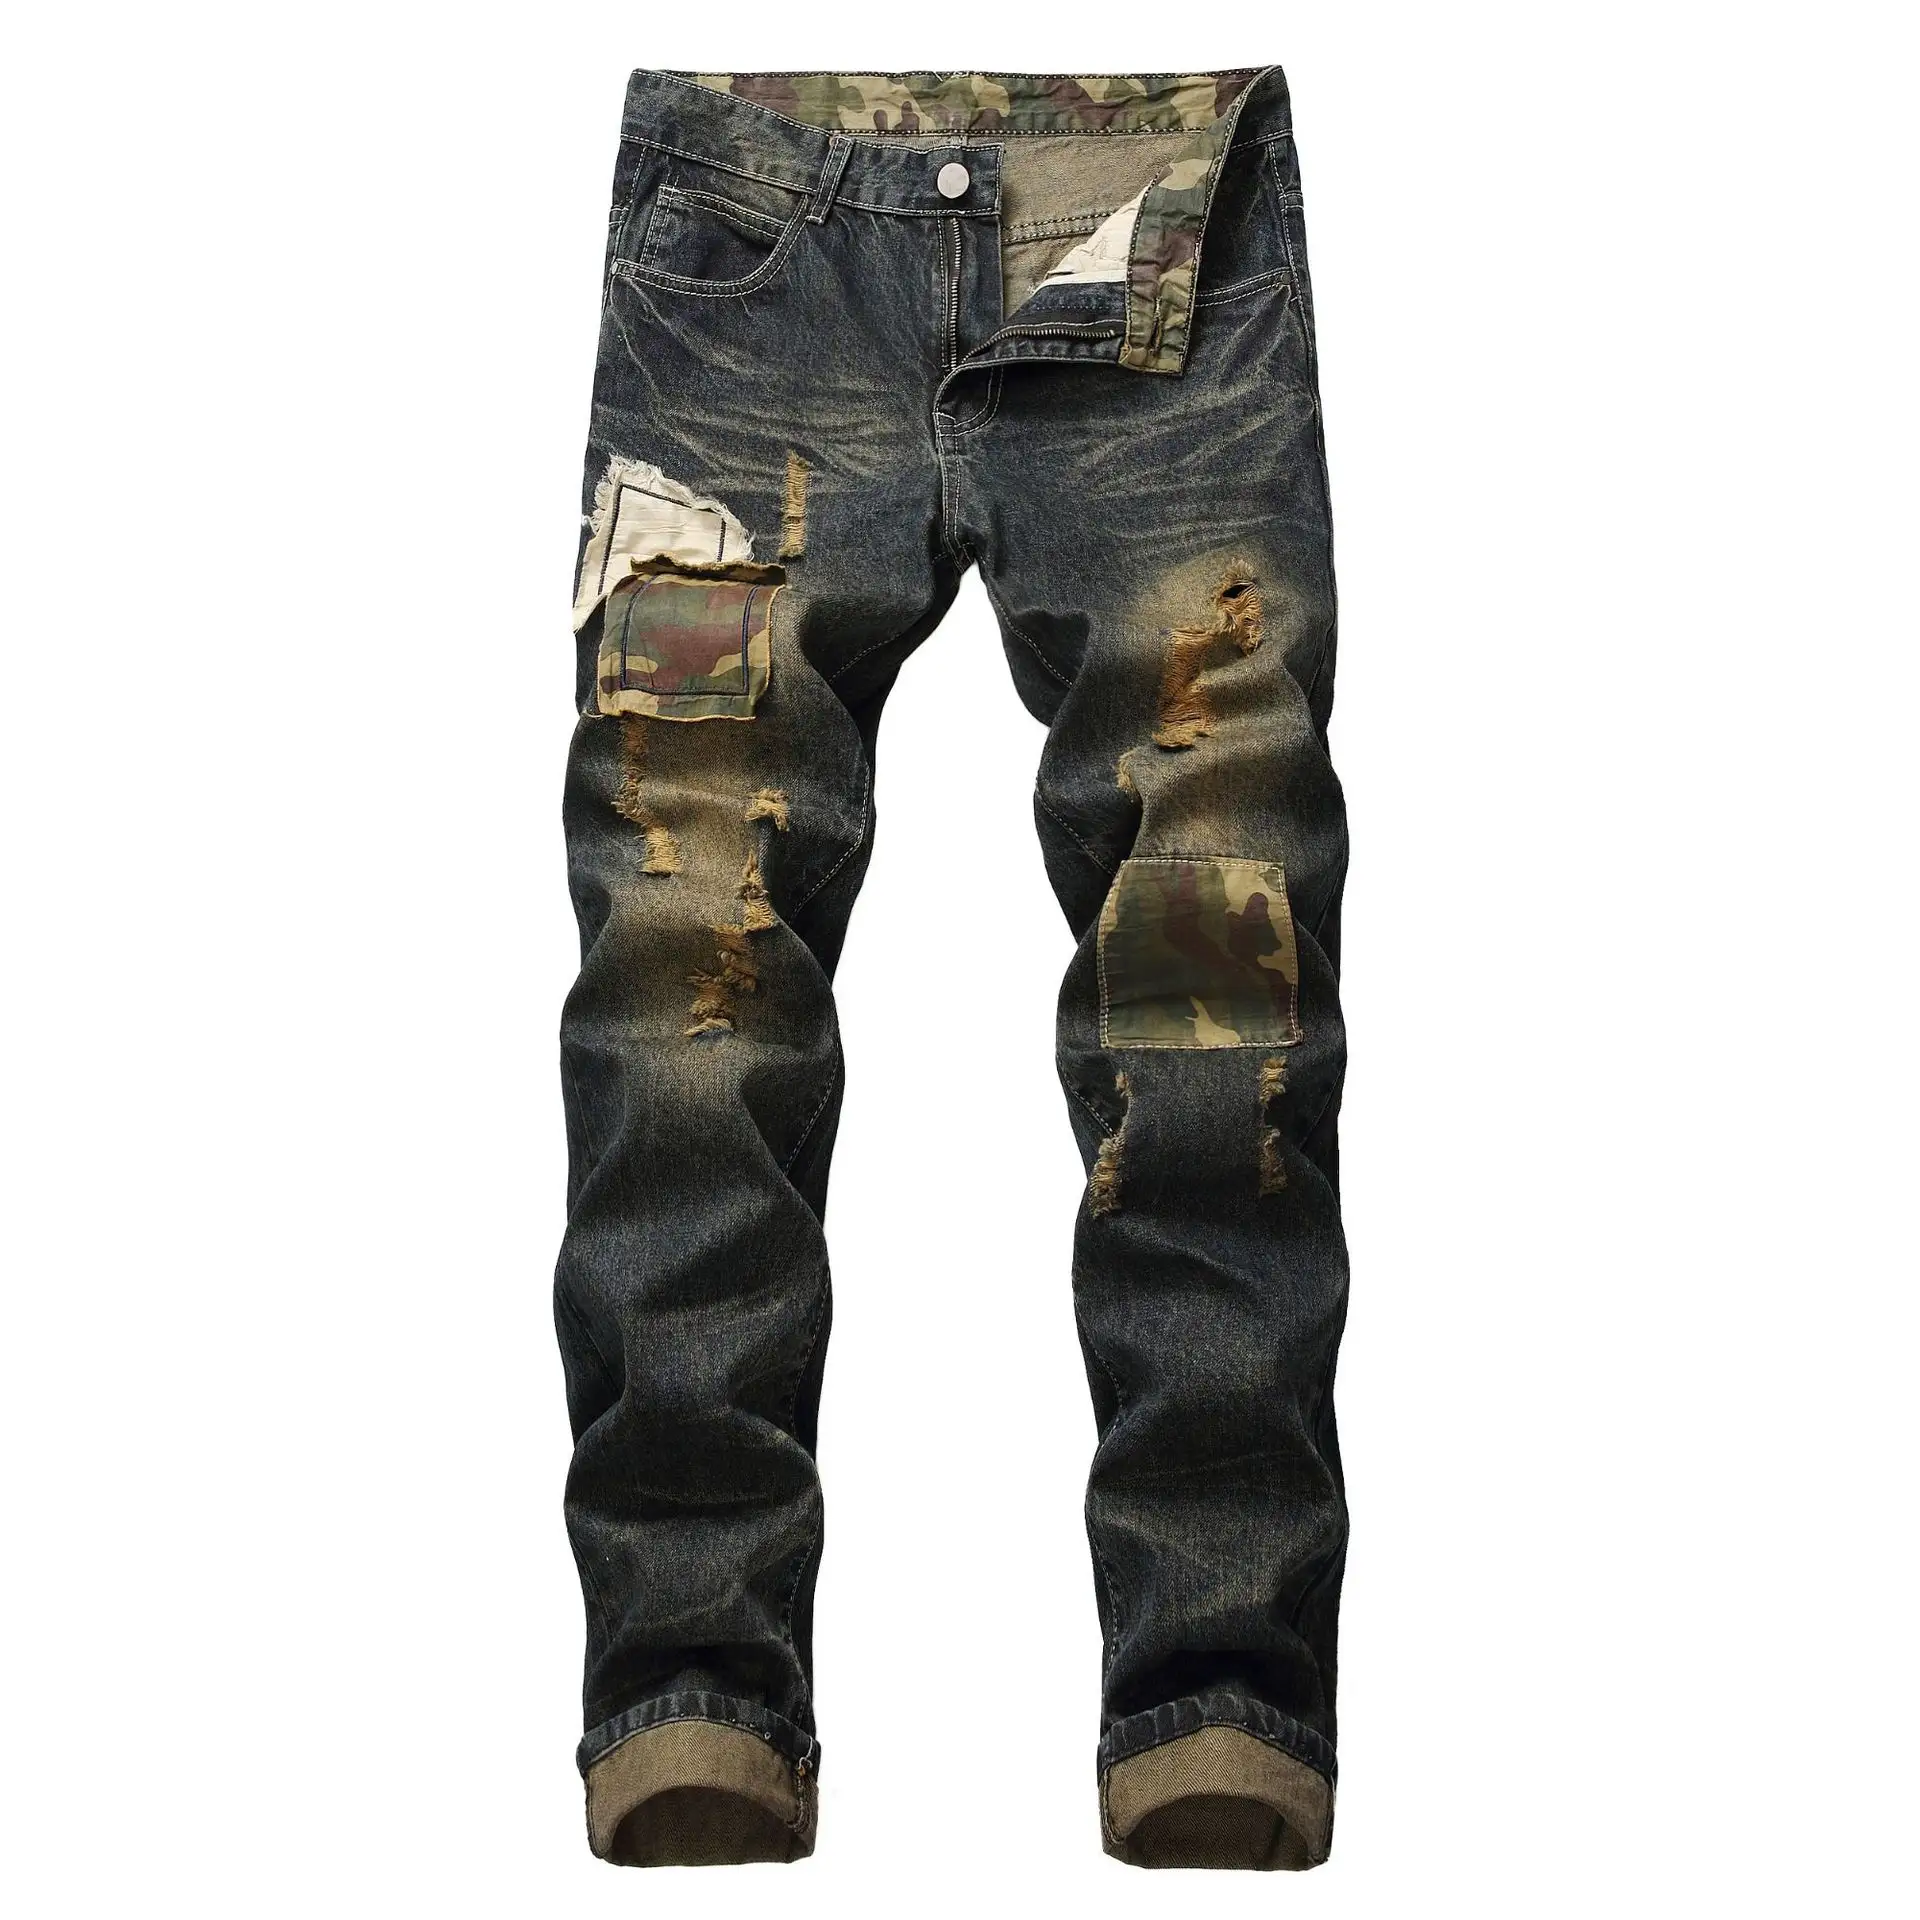 Hip hop Trend The Patch Ripped Distressed Pantalon Fabric Trousers Zipper Denim Pants Plus Size Men's Jeans